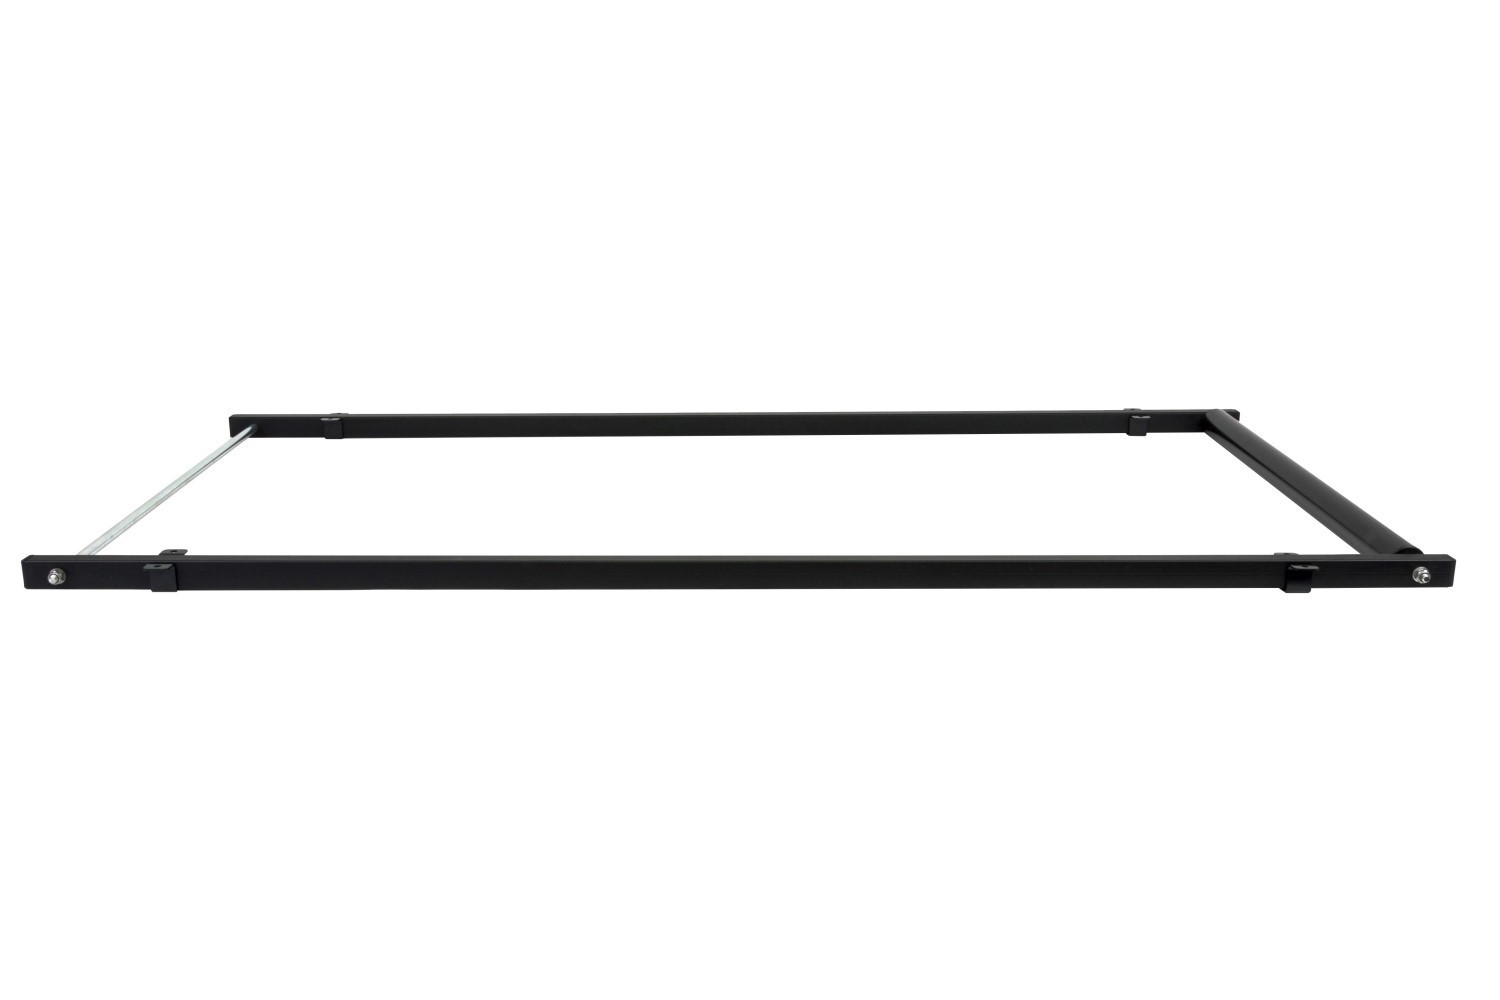 Rouleau de chargement largeur 90 cm - longueur cadre 180 cm Menabo Professional